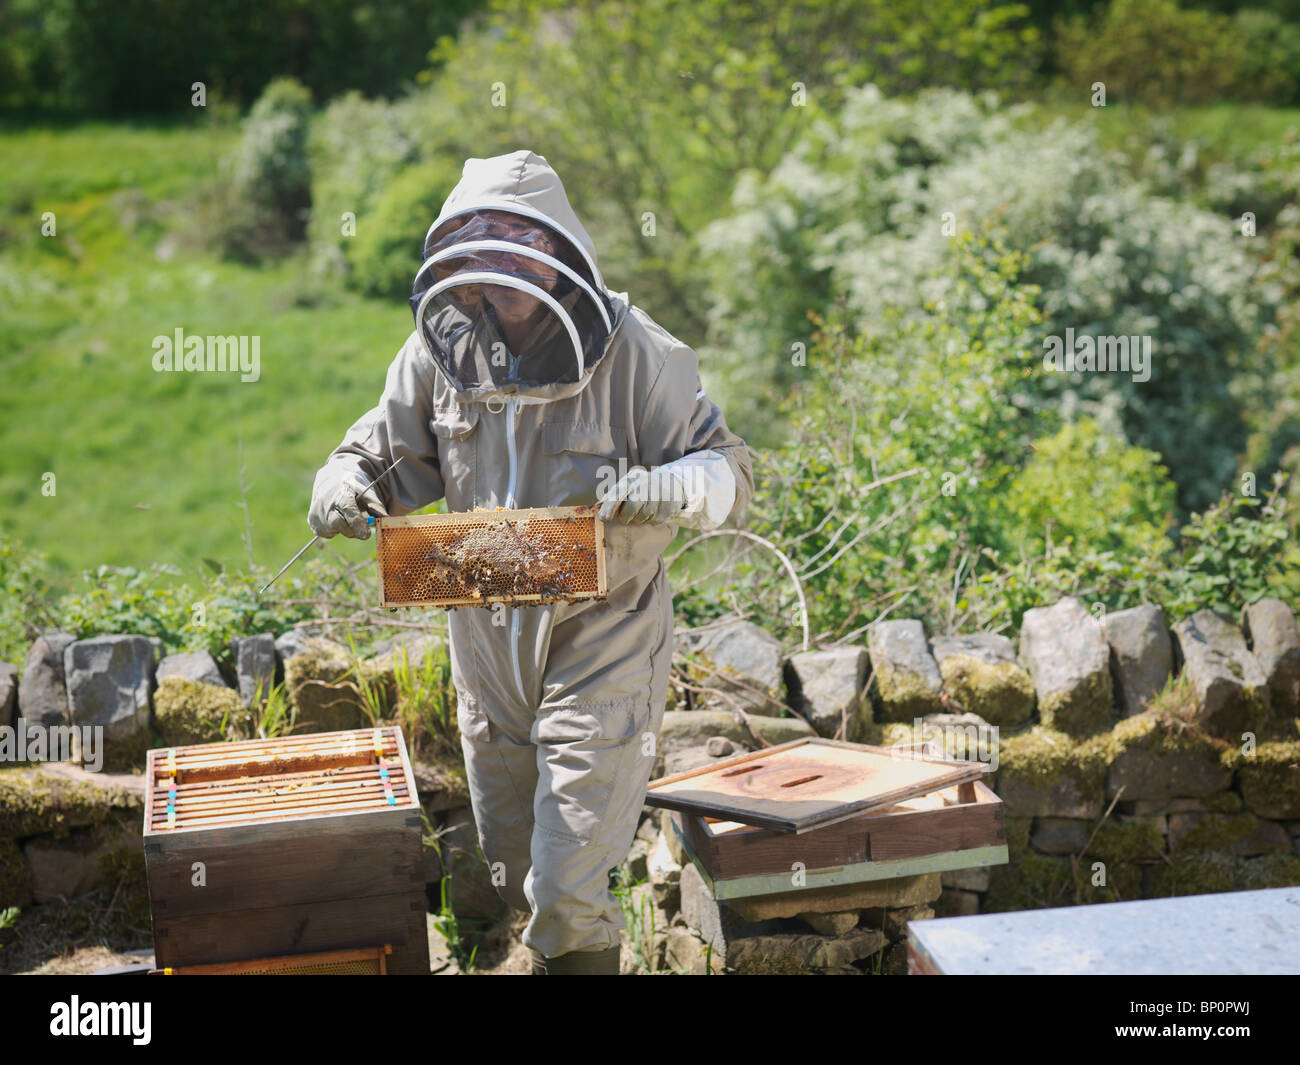 Inspeccione el apicultor panales de miel Foto de stock